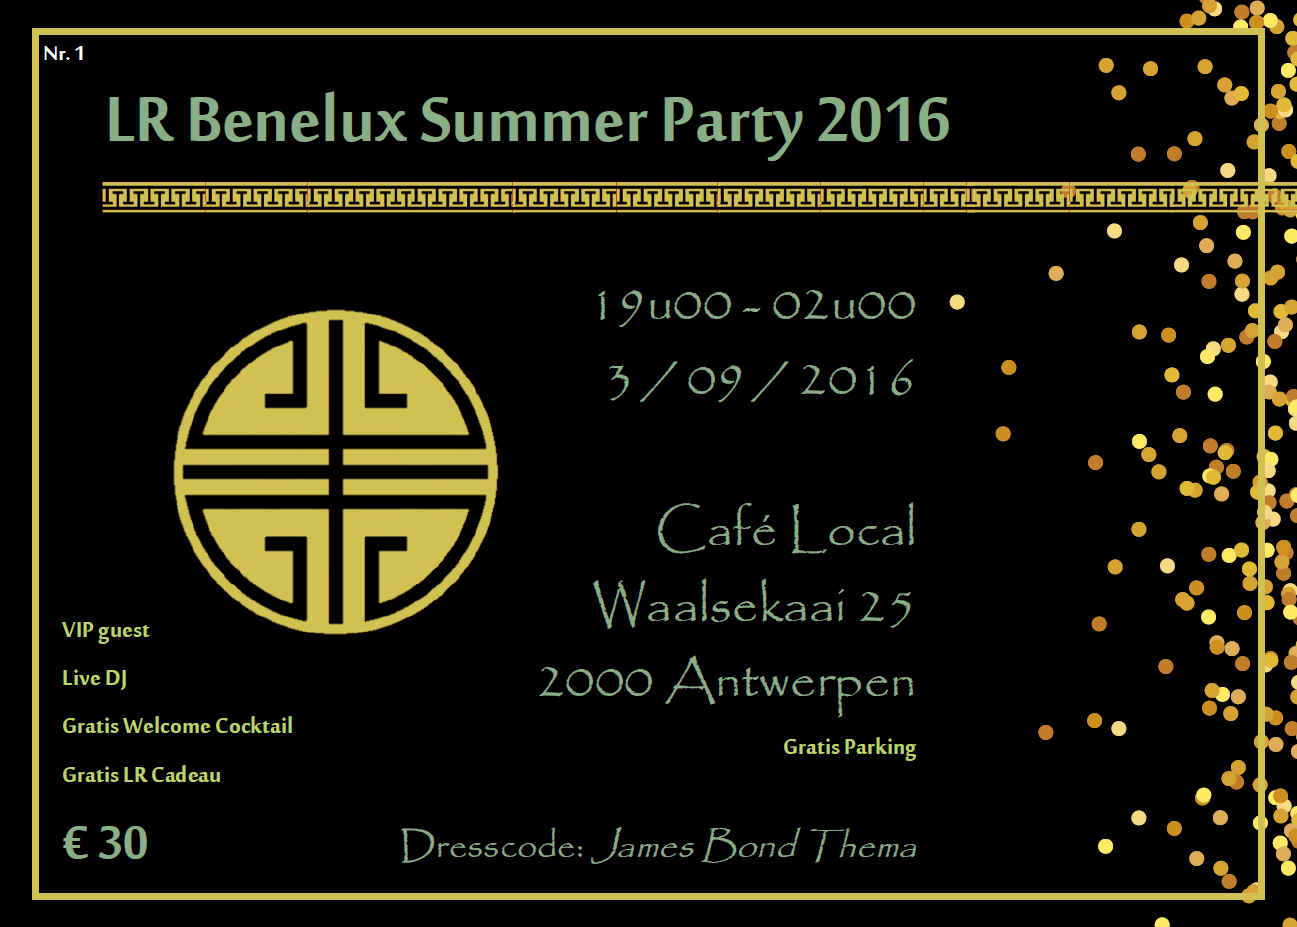 tijdens onze LR Benelux Summer Party 2016.